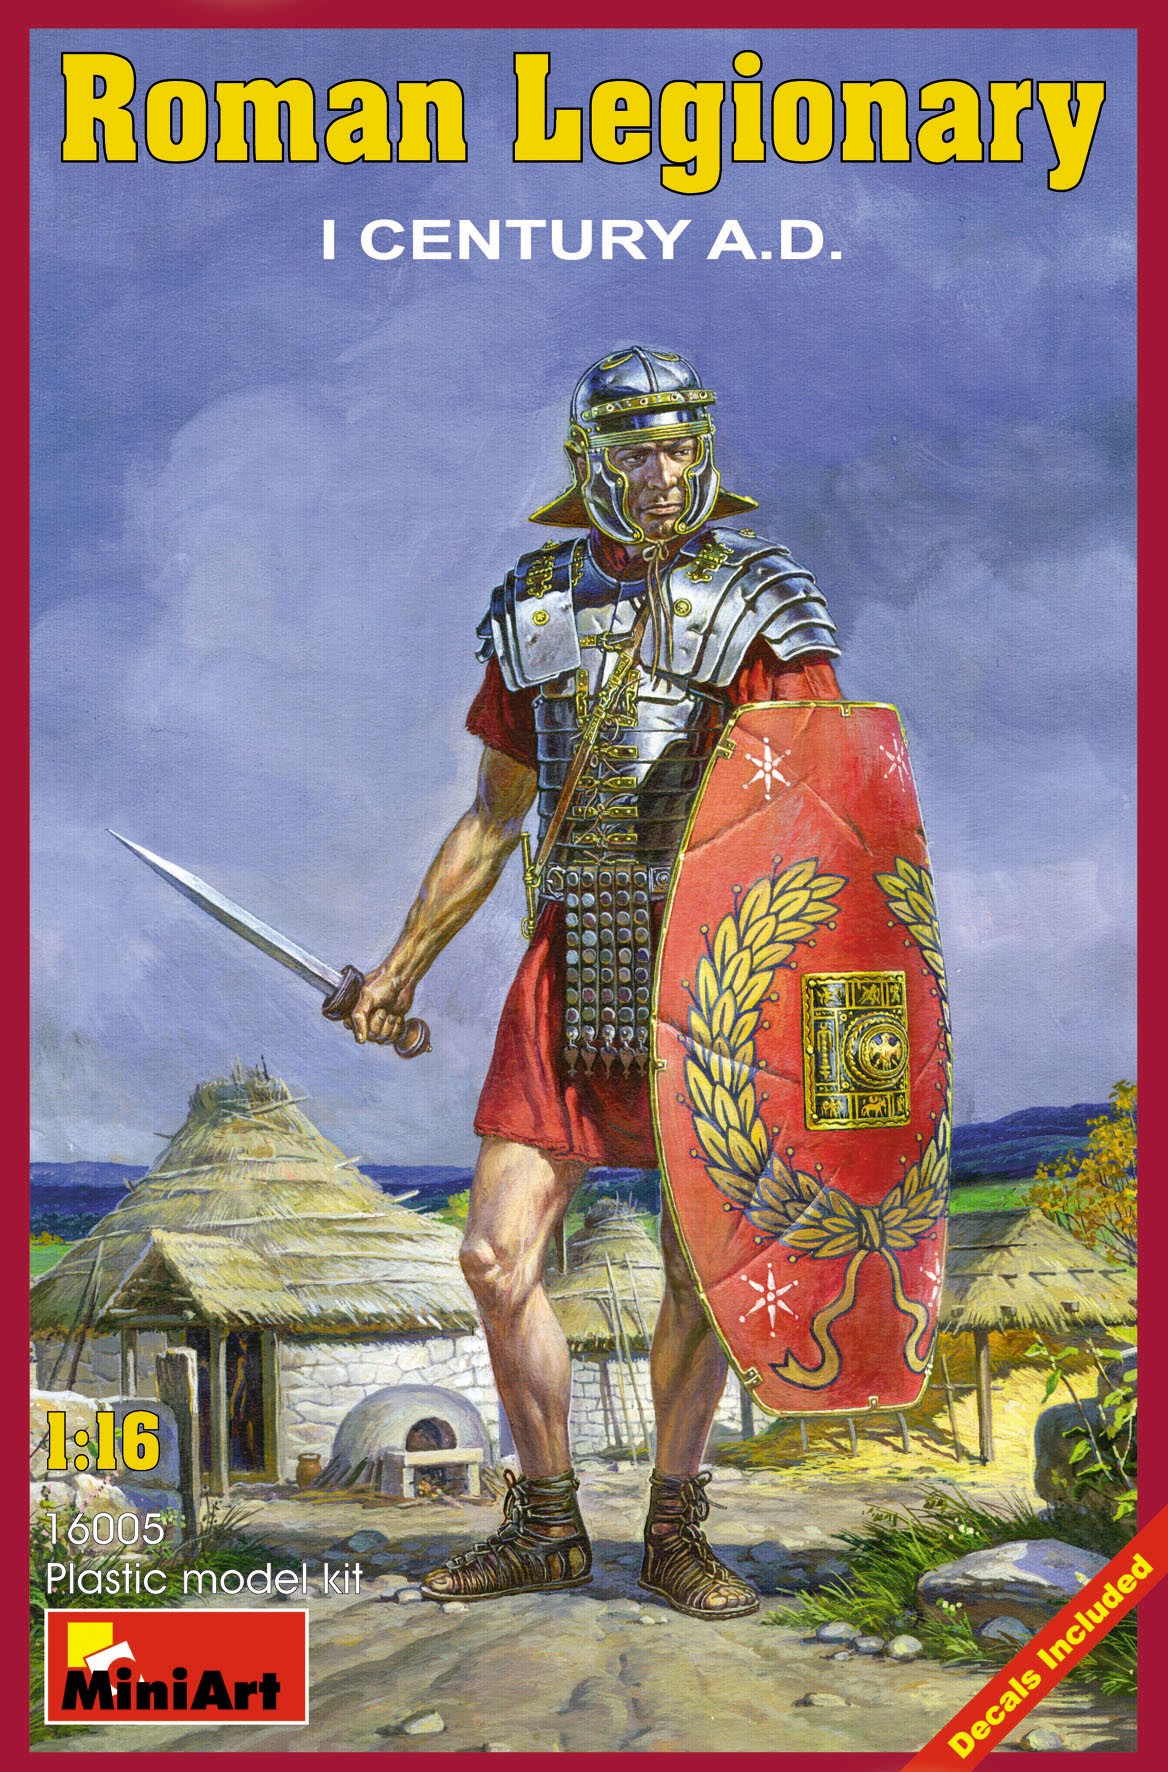 Roman Legionary - I Century A.D. by MiniArt